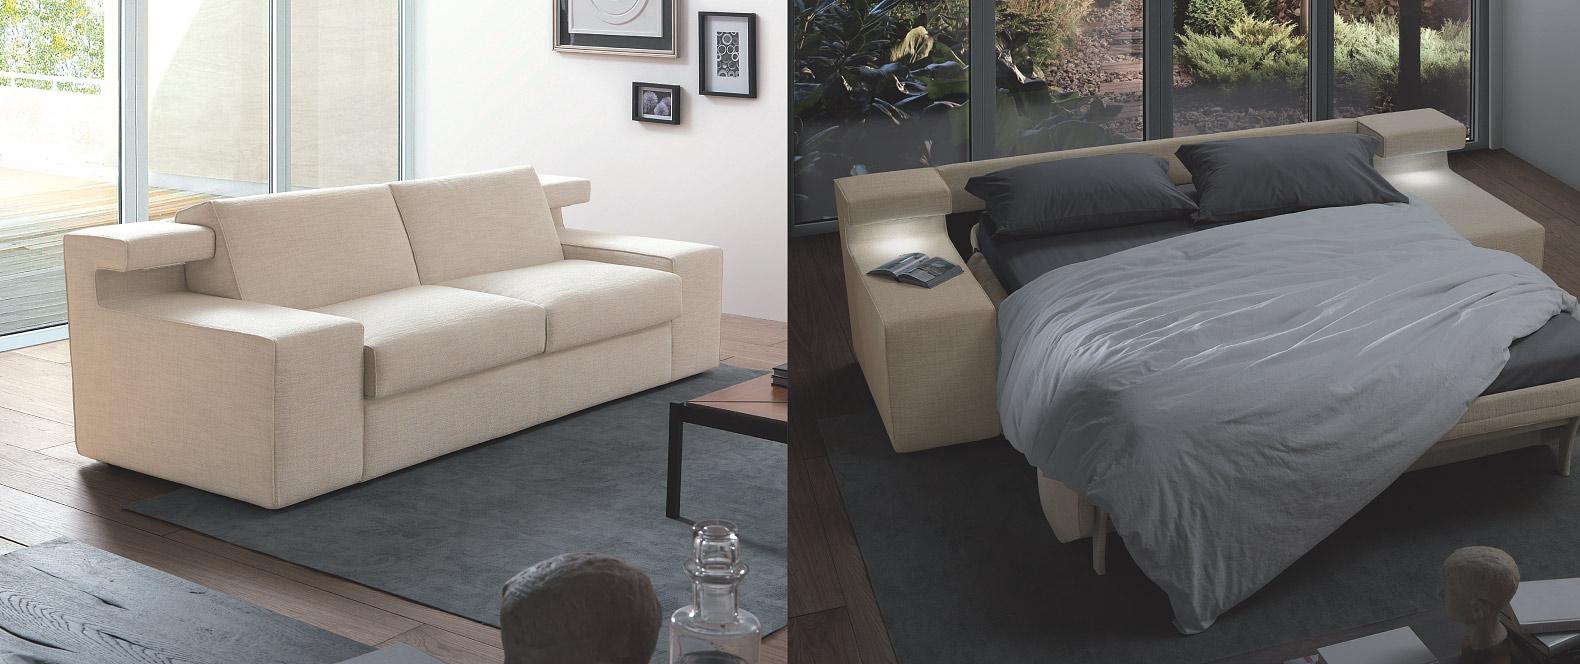 Canapés-lits design de haute qualité